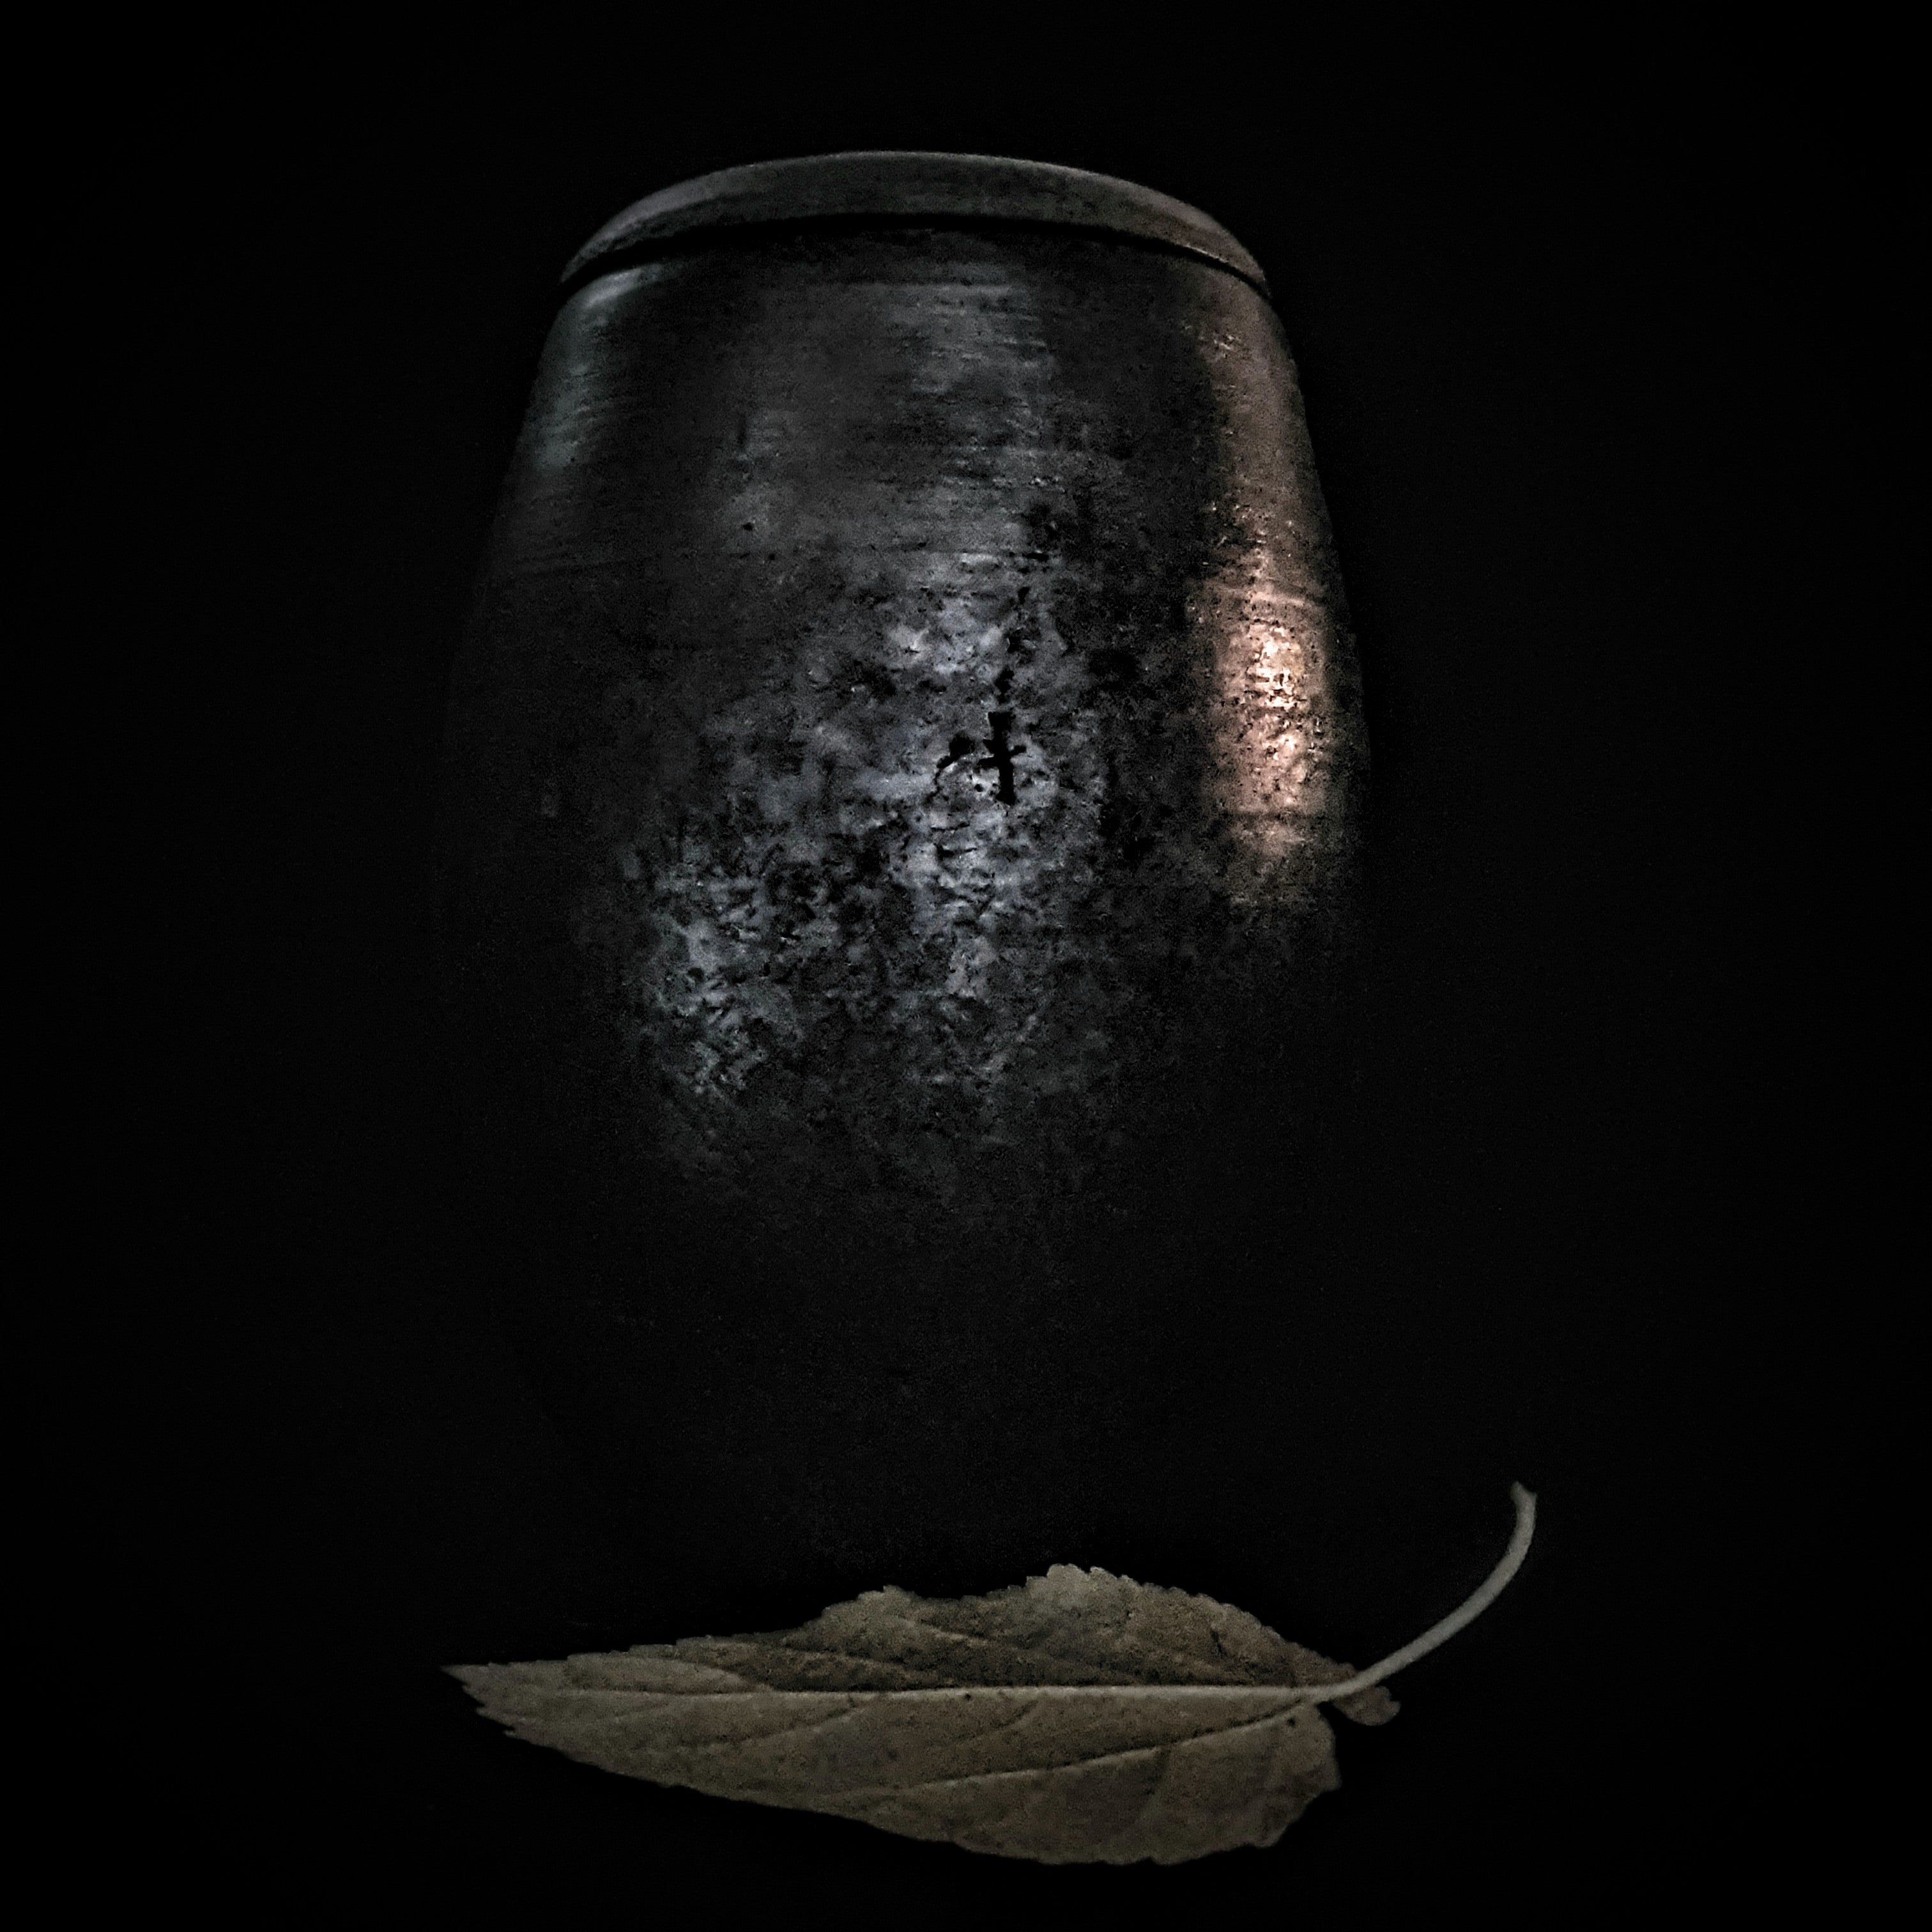 Black Artistic Urn | Urn For Human Or Pet Ashes | Artistic Unique Urns | Cremation Urn For Your Loved Ones | One Of A Kind Urn | Wabi Sabi 8